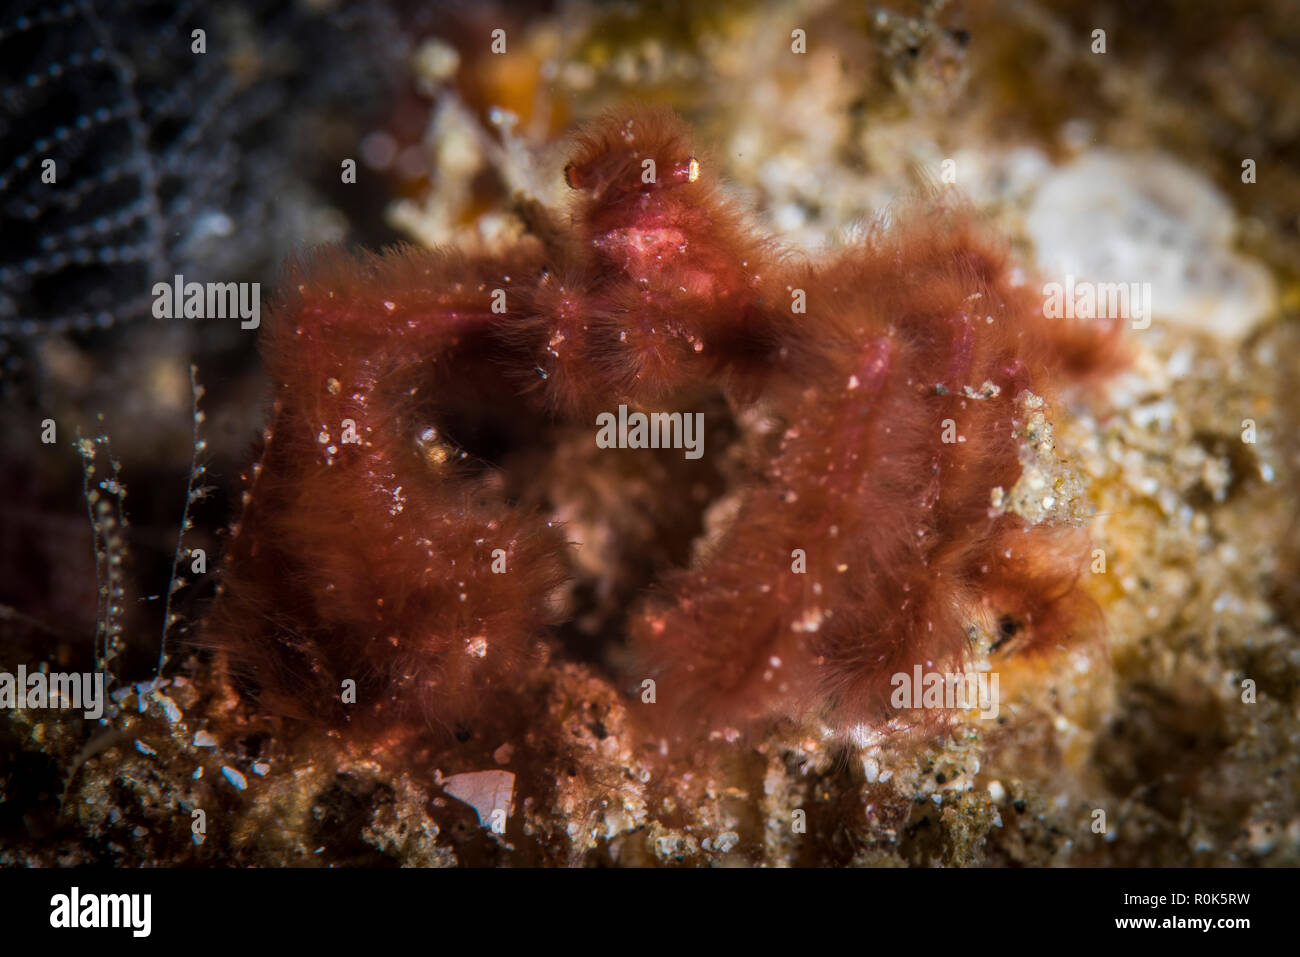 Orangutan crab, Anilao, Philippines. Stock Photo